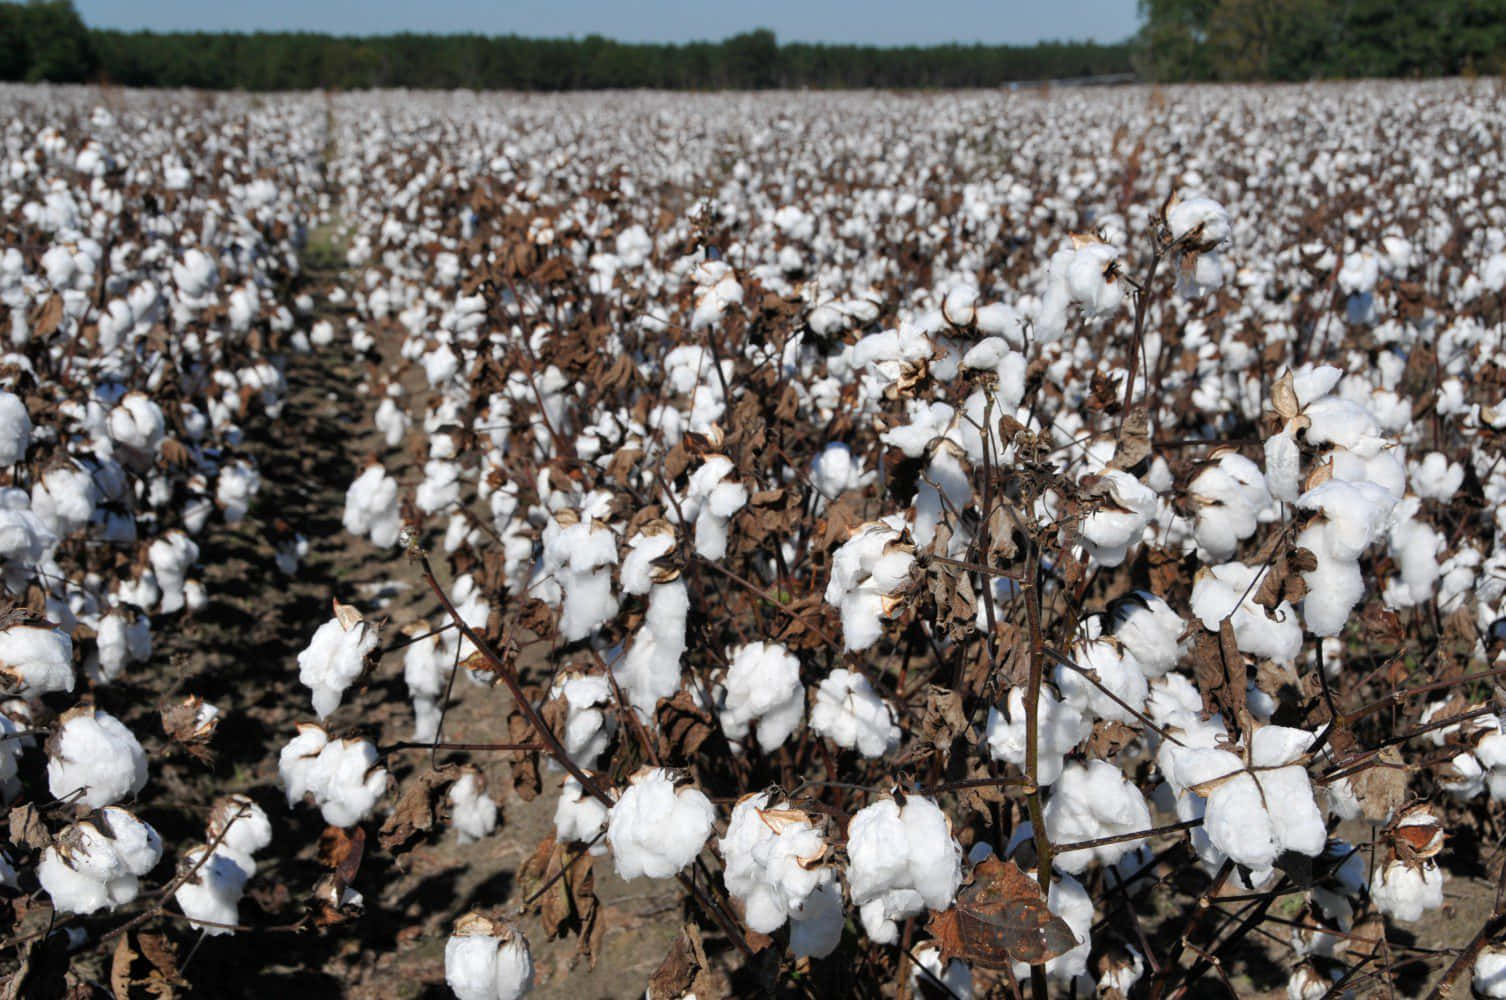 A Nature Lover's Dream - An Idyllic Cotton Field